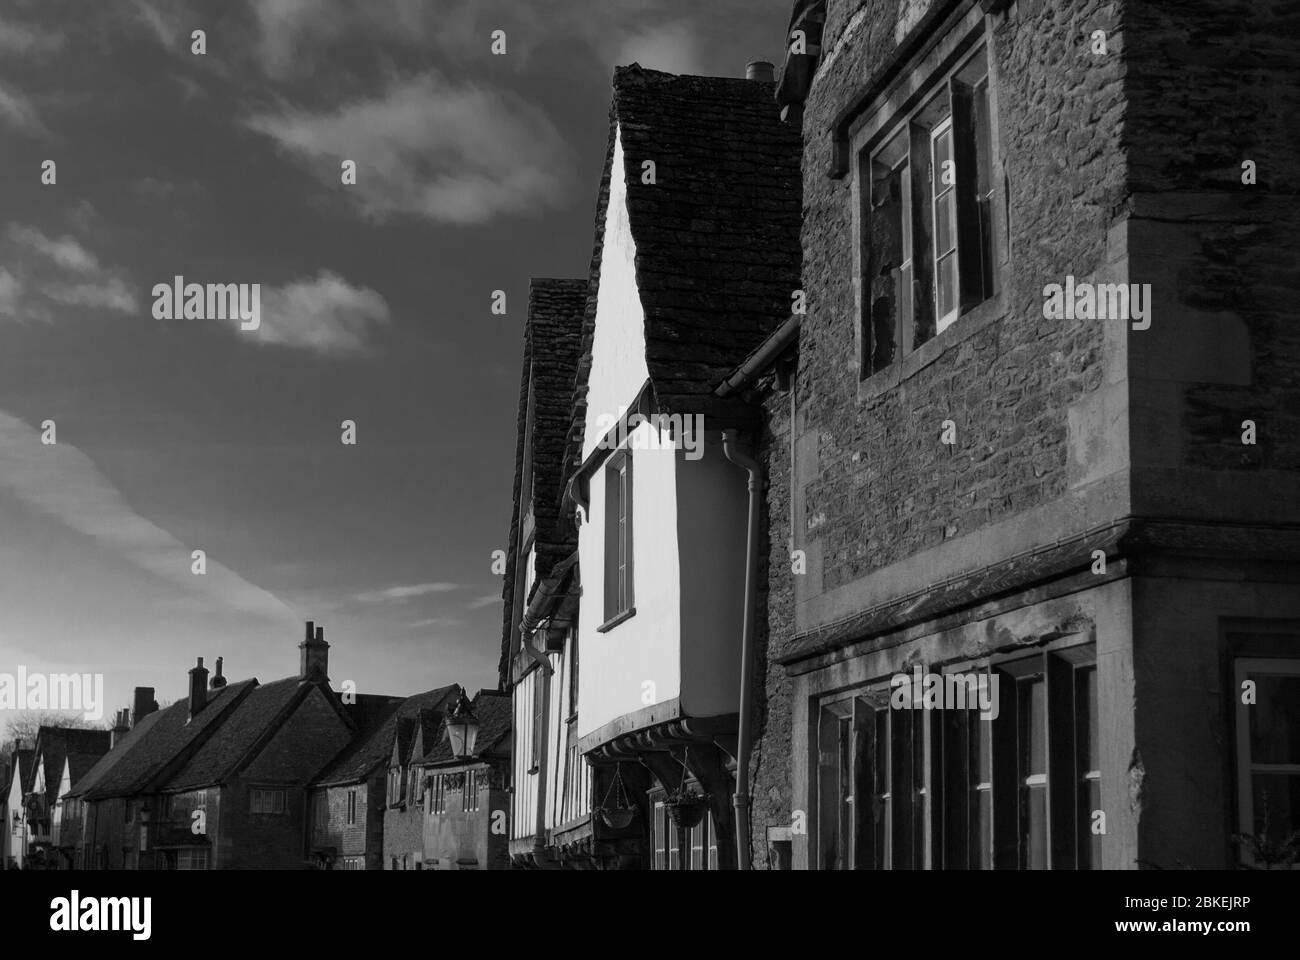 Conservazione conservazione del patrimonio conservazione Vecchio Villaggio Inglese Cotswolds Costswold edifici in pietra architettura Lacock Village Hither Way, Lacock, SN15 Foto Stock